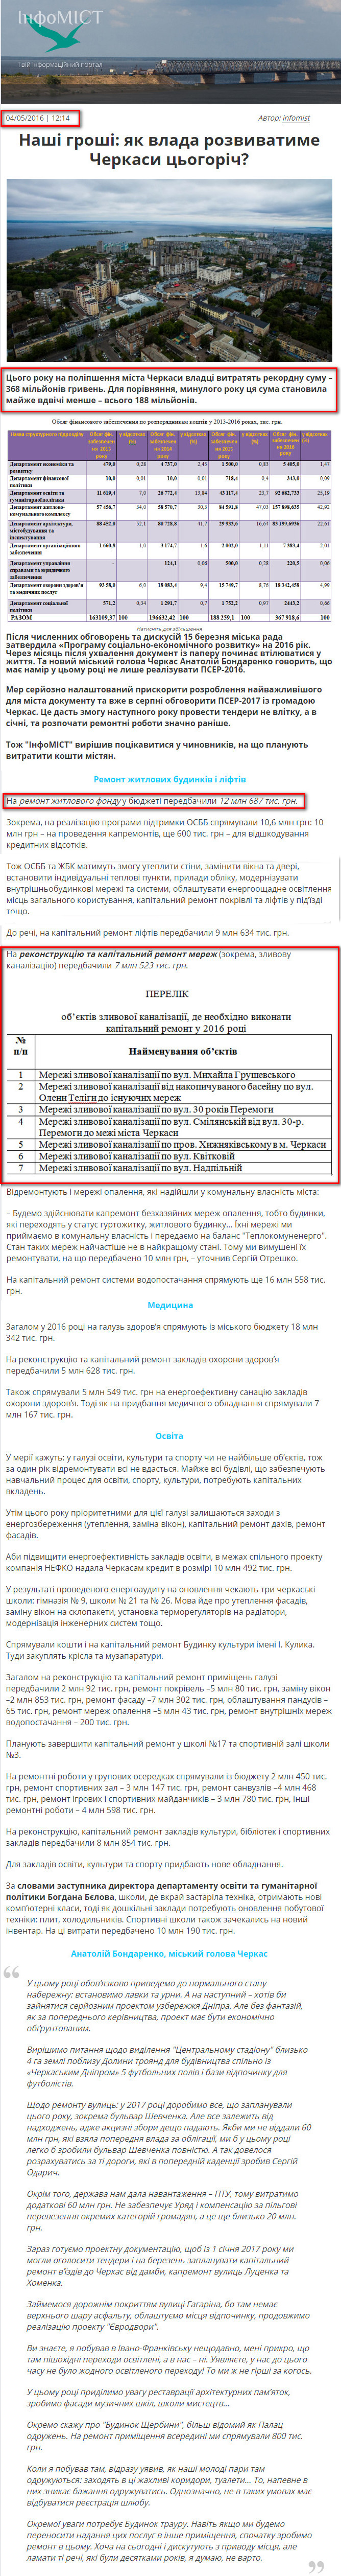 http://infomist.ck.ua/nashi-groshi-yak-vlada-rozvyvatyme-cherkasy-tsogorich/